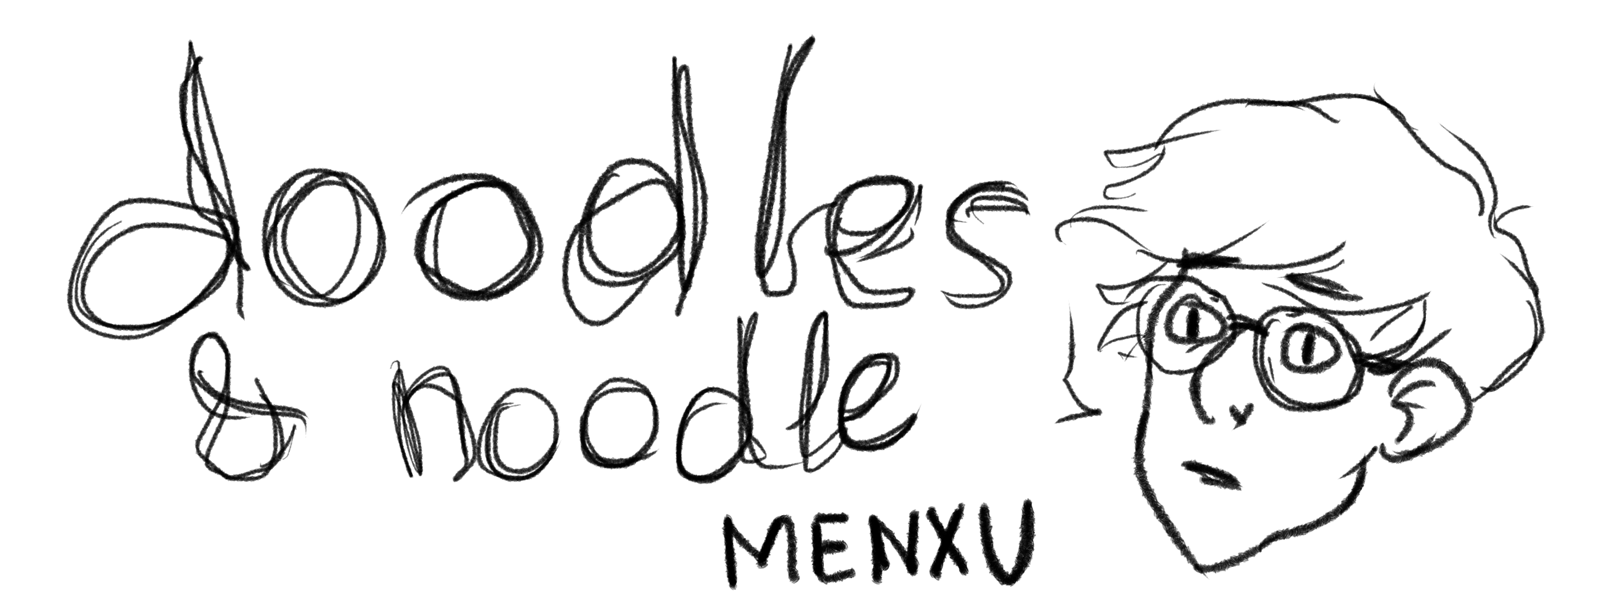 doodles and noodle mein crap